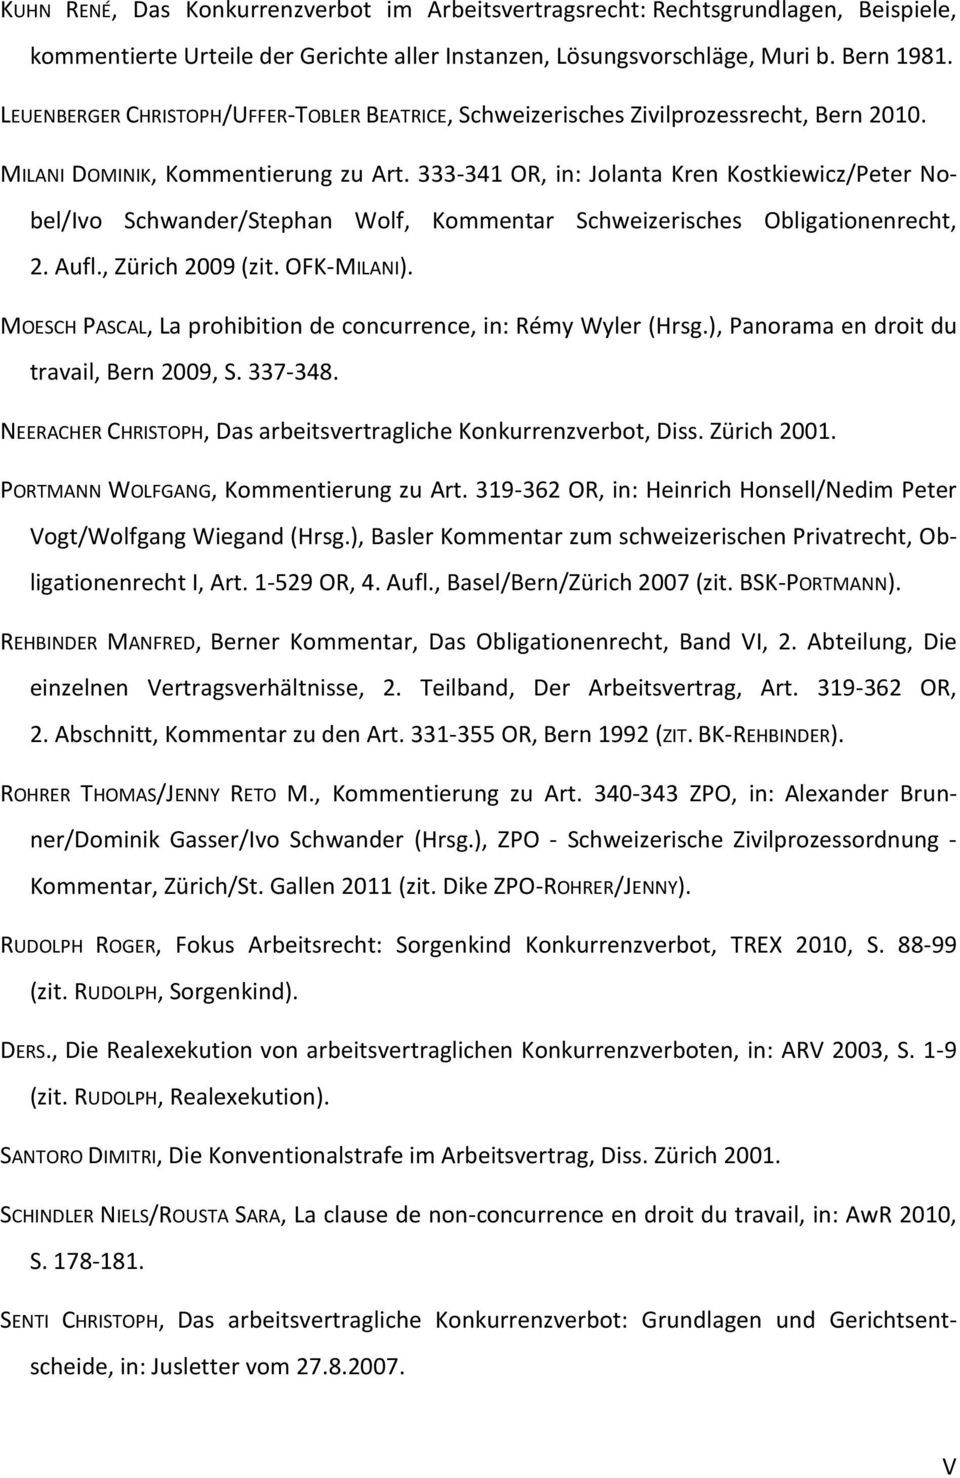 333-341 OR, in: Jolanta Kren Kostkiewicz/Peter Nobel/Ivo Schwander/Stephan Wolf, Kommentar Schweizerisches Obligationenrecht, 2. Aufl., Zürich 2009 (zit. OFK-MILANI).